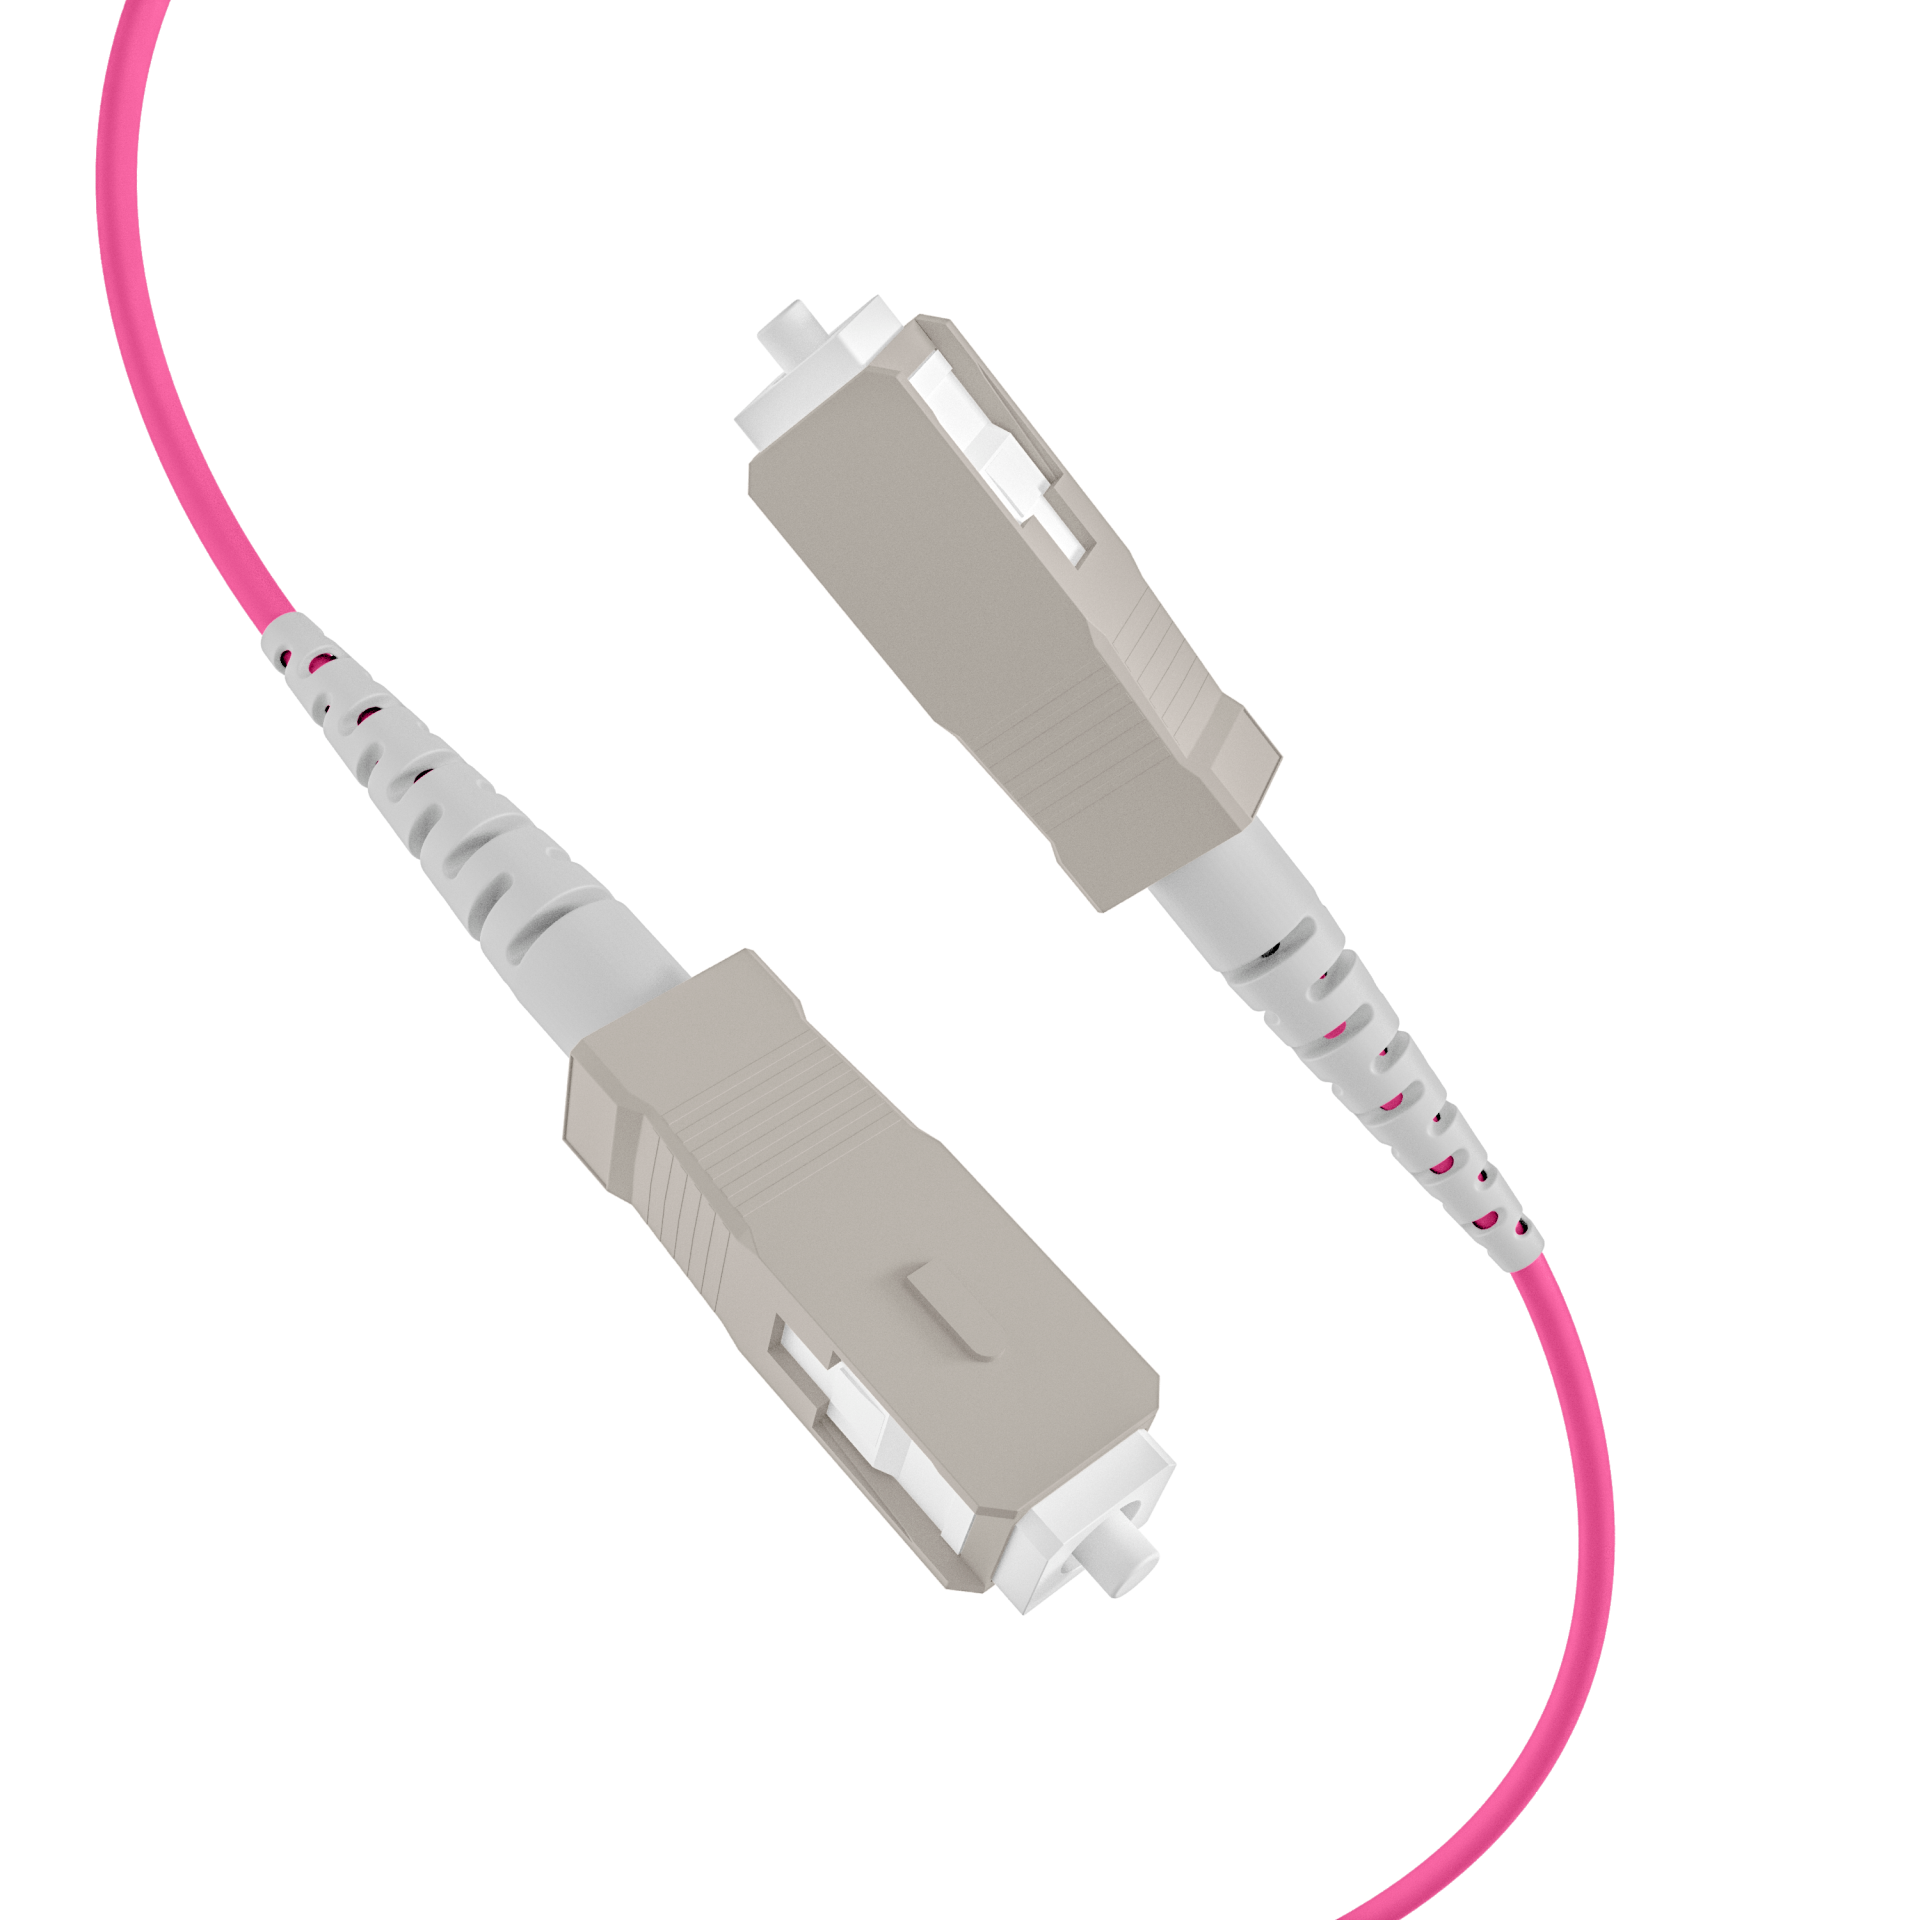 Trunk cable U-DQ(ZN)BH OM4 12G (1x12) SC-SC,60m Dca LSZH